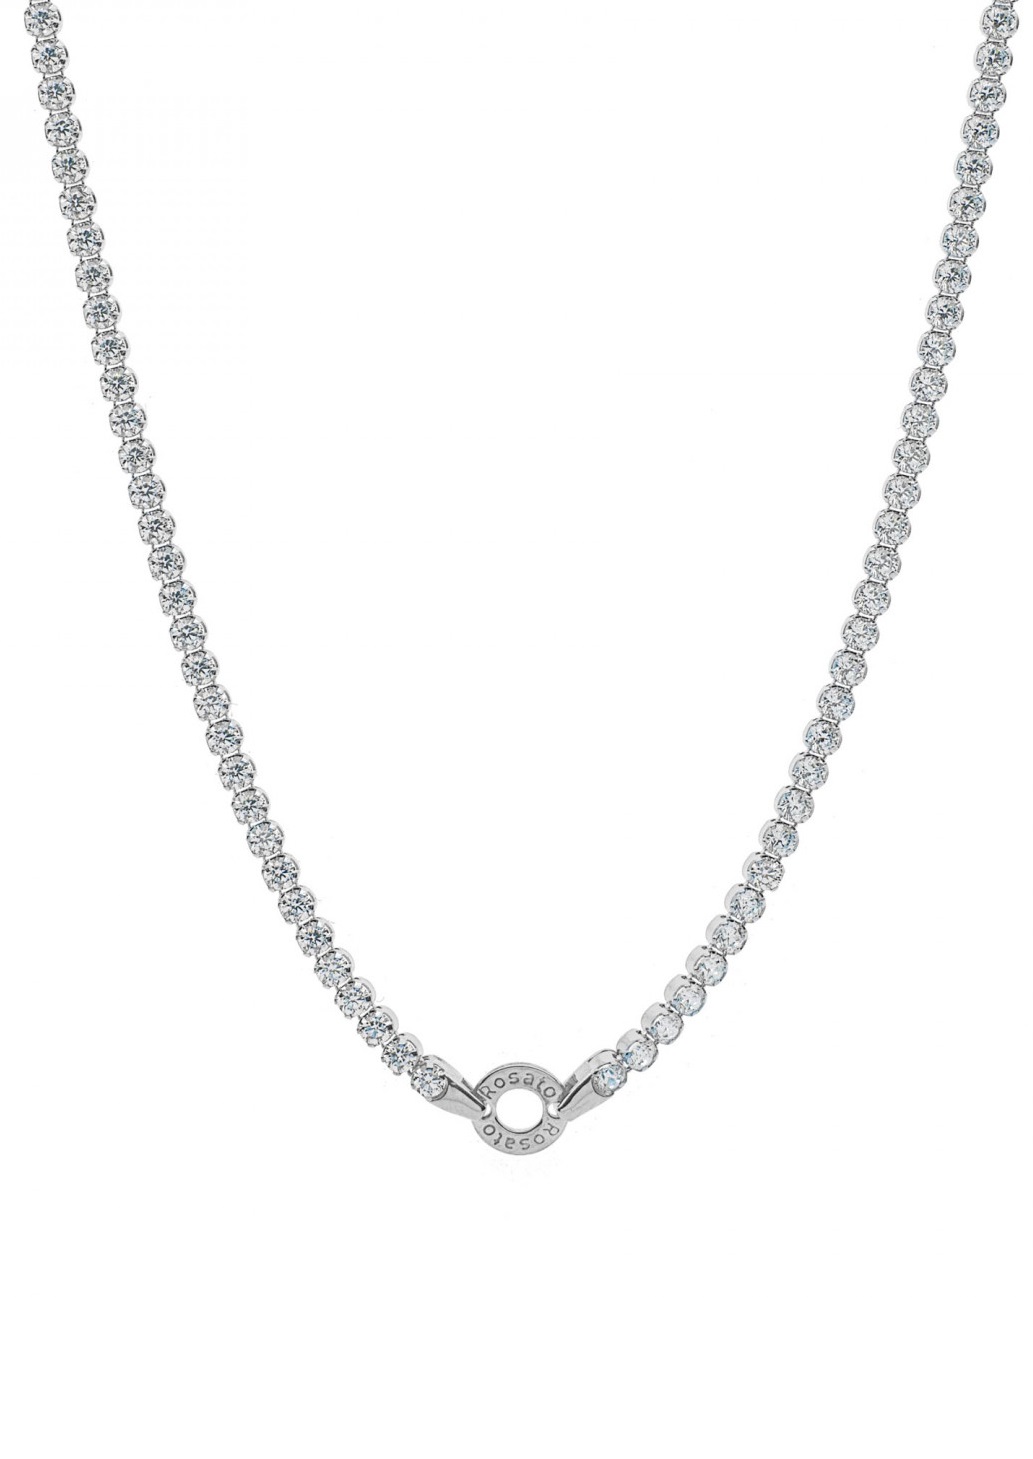 Rosato Třpytivý stříbrný náhrdelník s kroužkem na přívěsky Storie RZC052